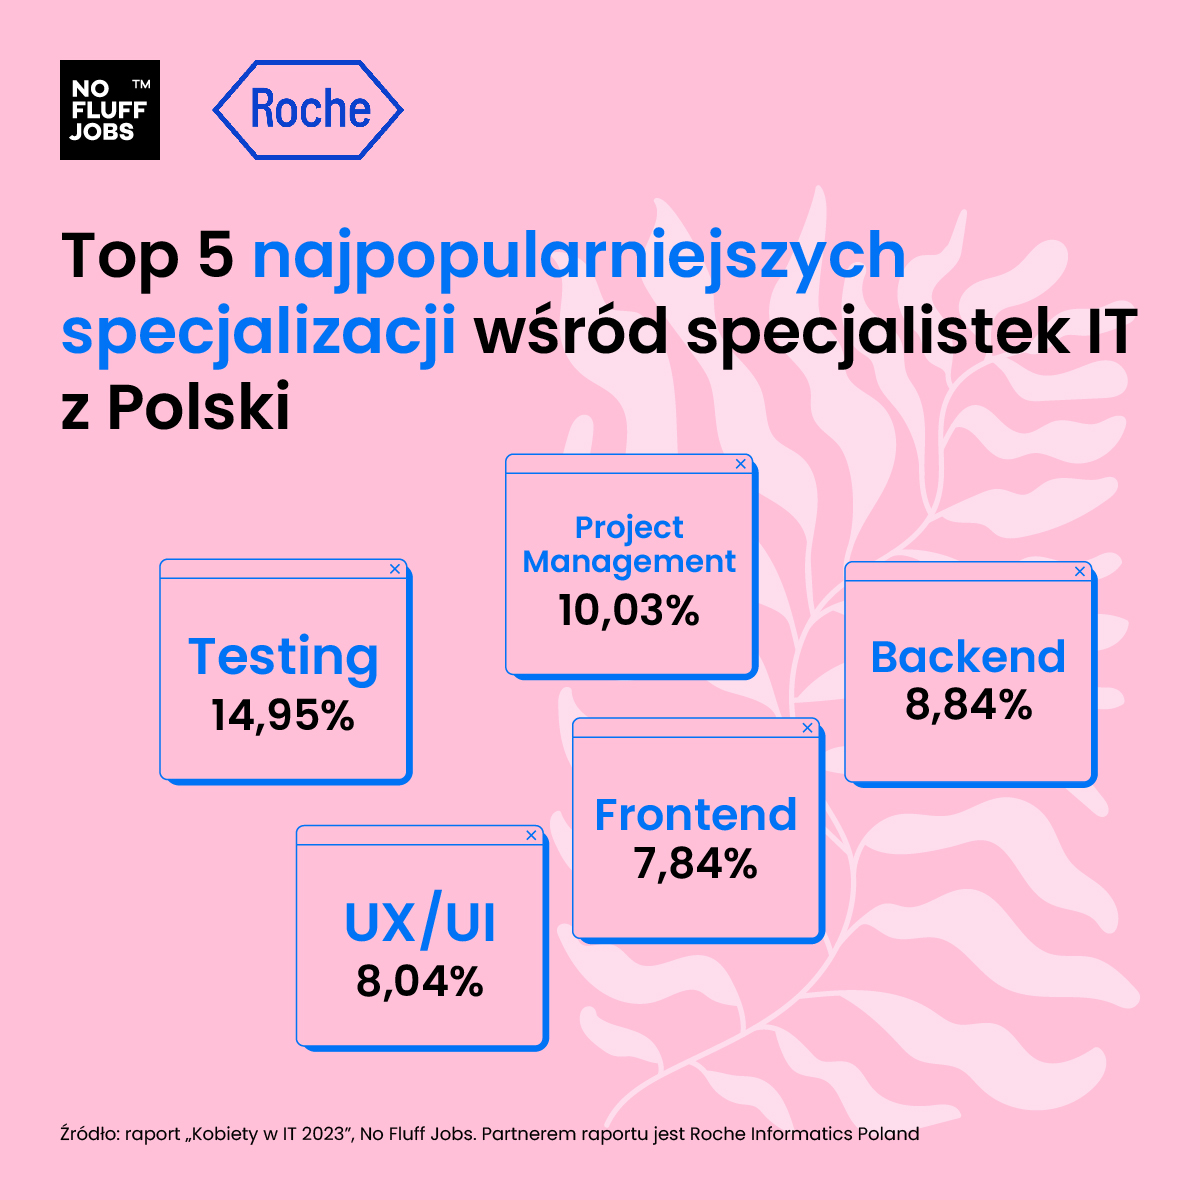 raport nfj x roche kobiety w it top 5 specjalizacji polska